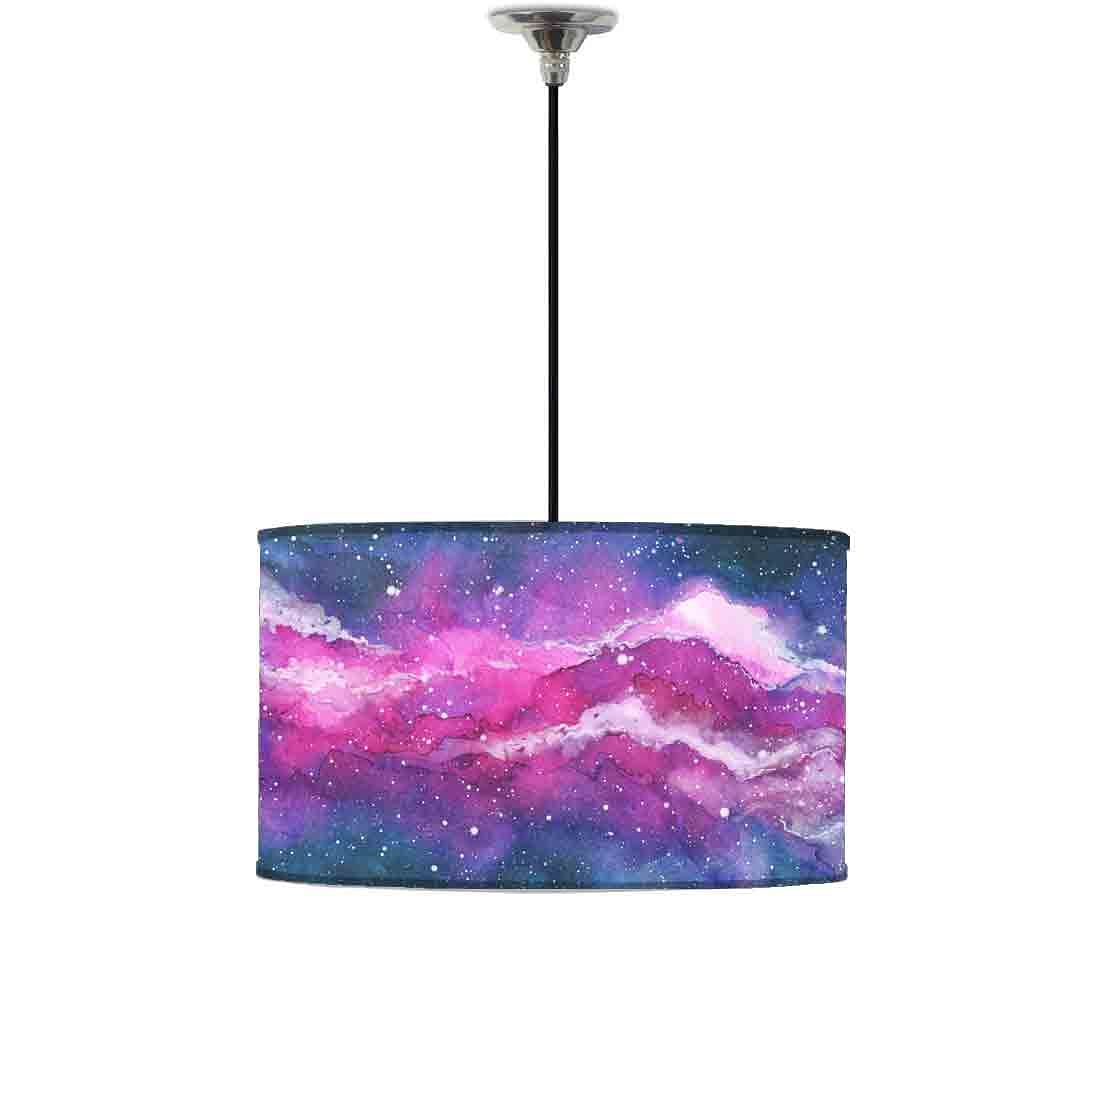 Ceiling Large Pendant Lighting Drum - Watercolor 0123 Nutcase